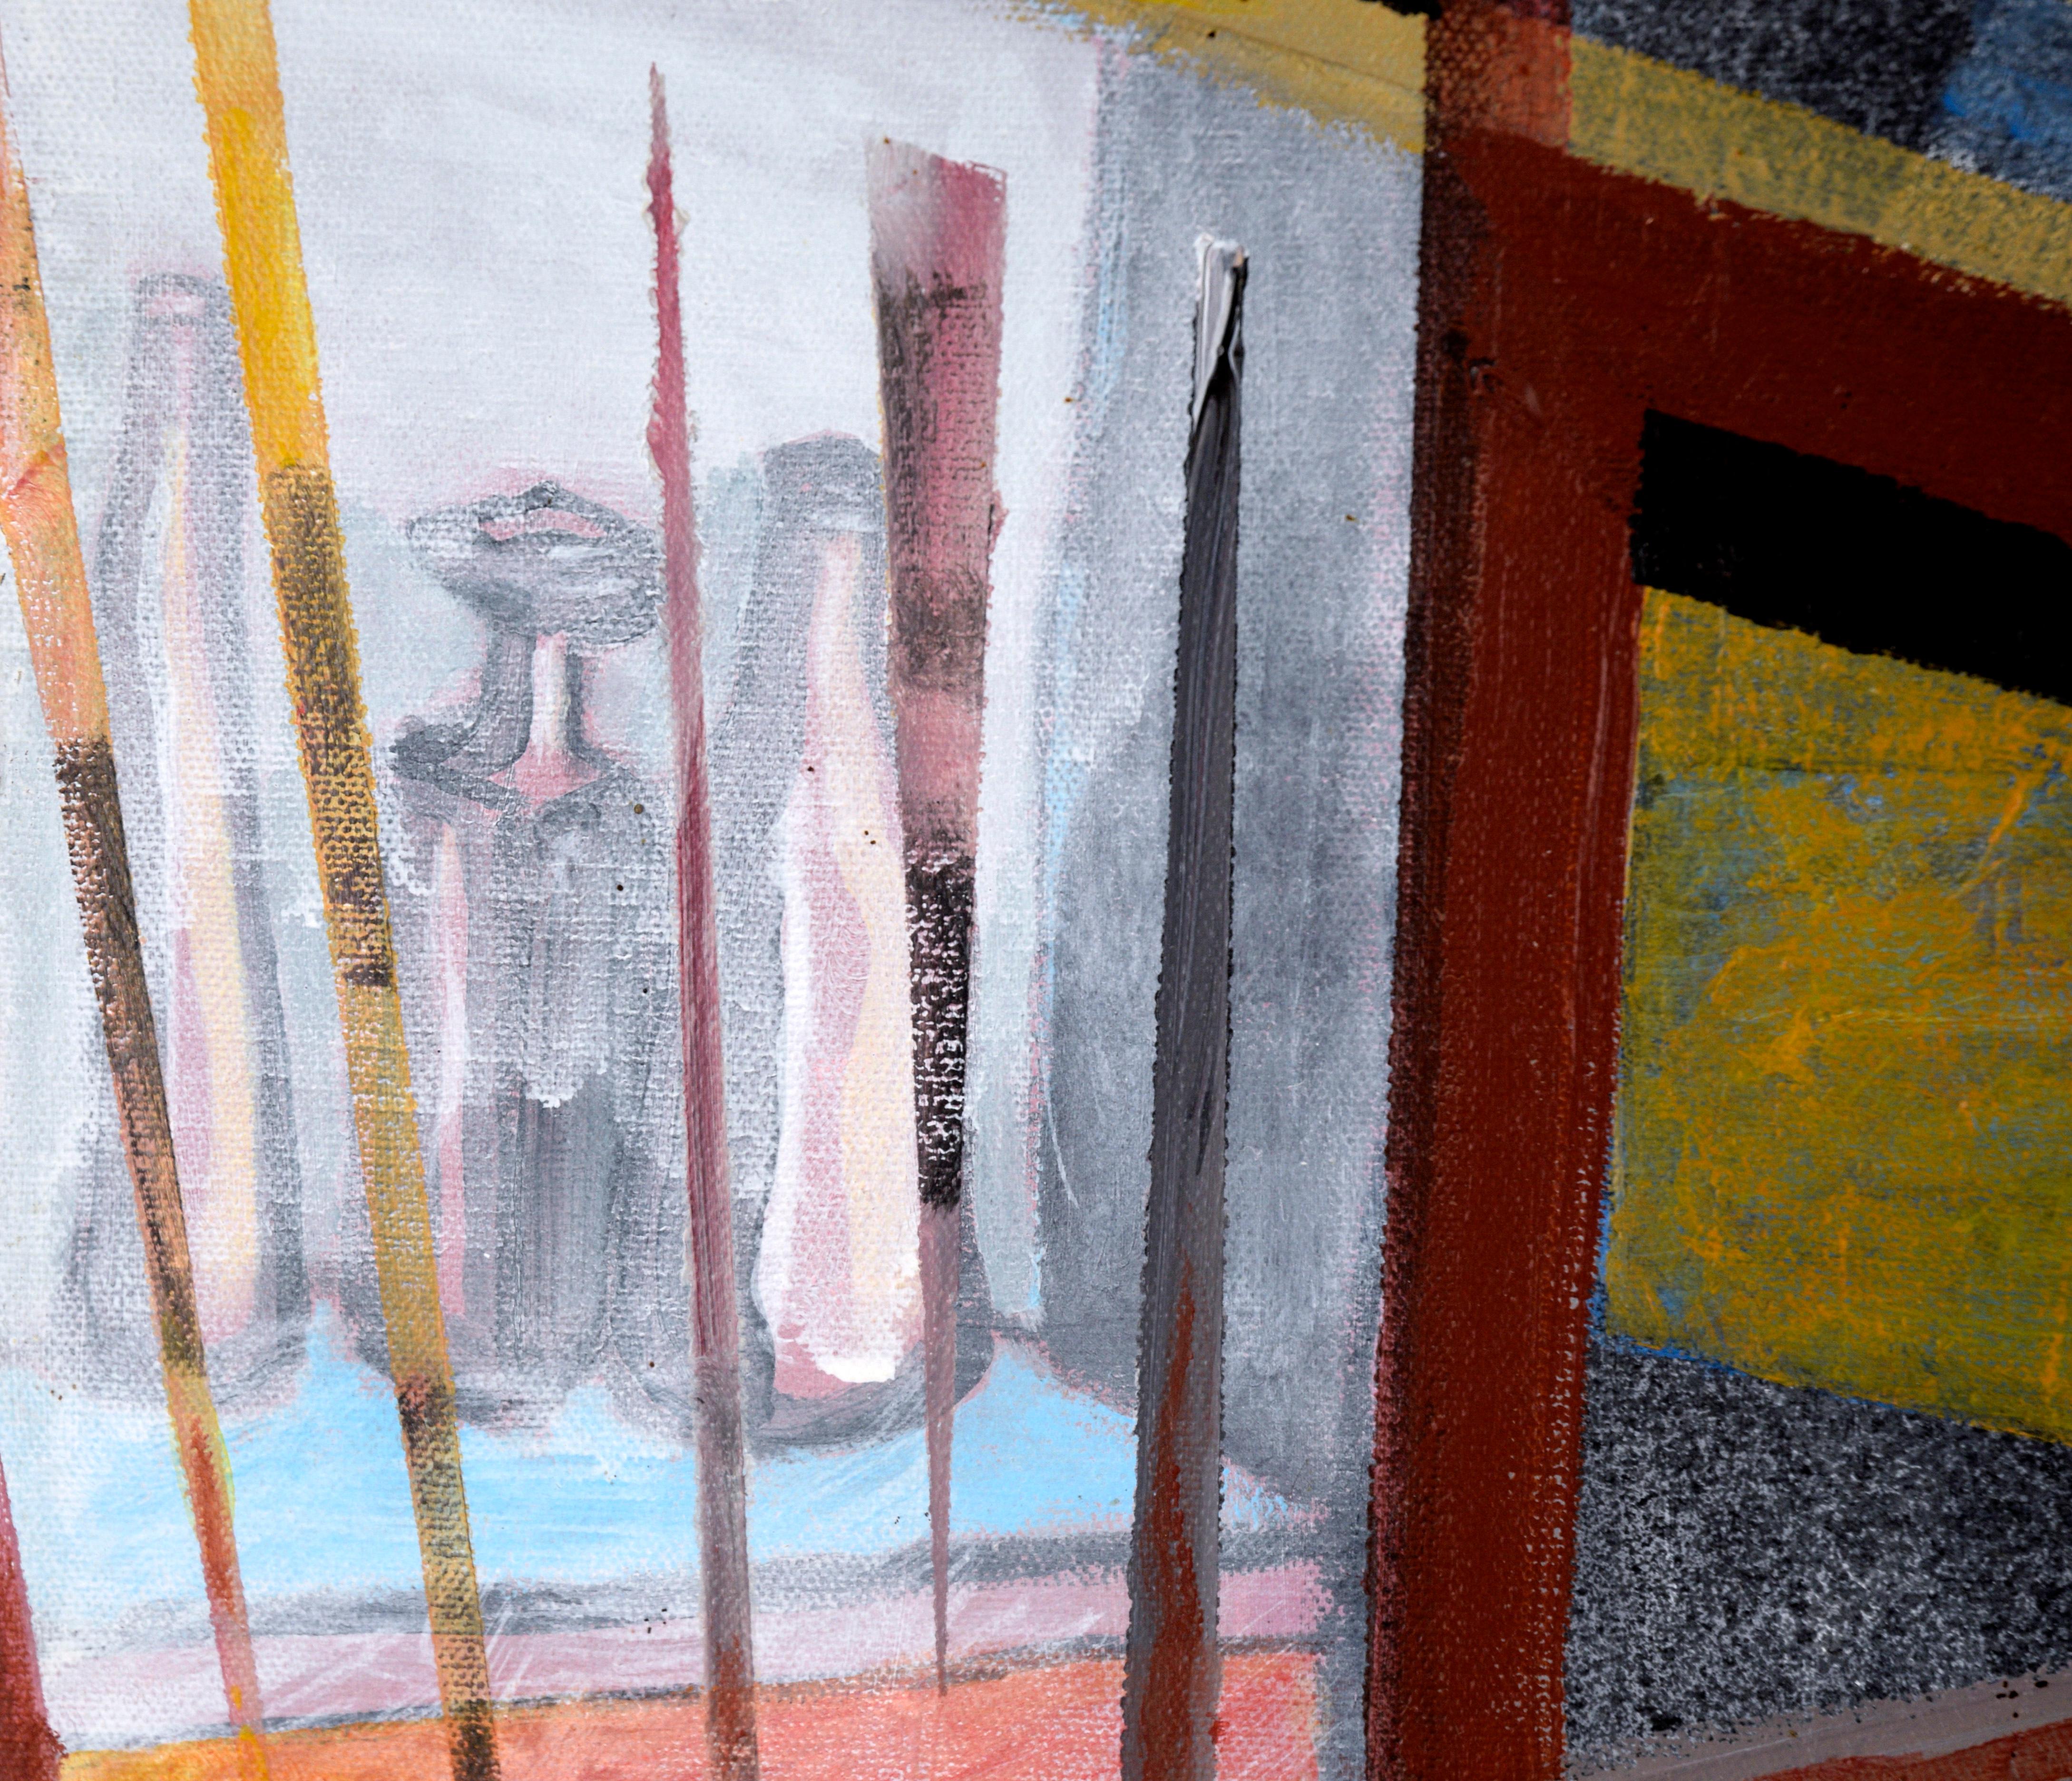 Abstrakte geometrische Komposition mit Flaschen aus Acryl auf Leinwand

Kräftige geometrische Abstraktion eines unbekannten Künstlers (20. Jahrhundert). Geradlinige Formen überlagern sich und vermitteln den Eindruck eines abstrahierten